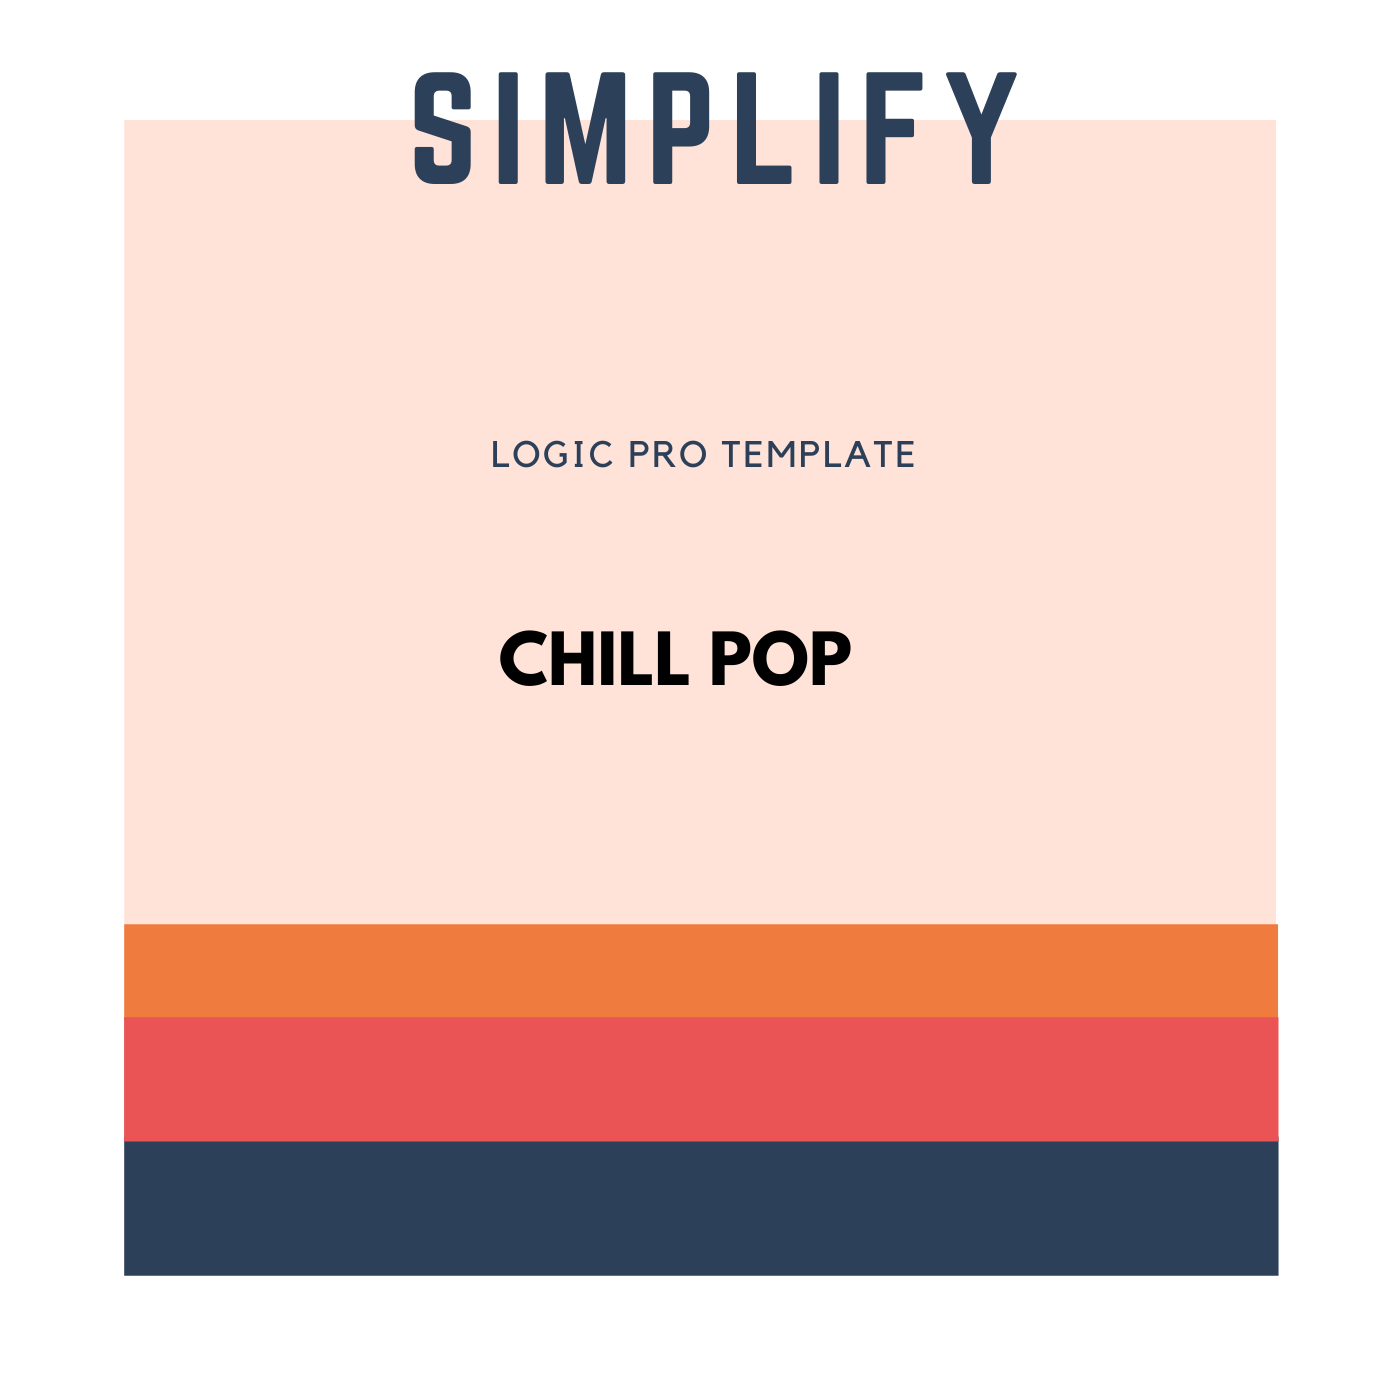 Simplify - Pop Logic Pro Template